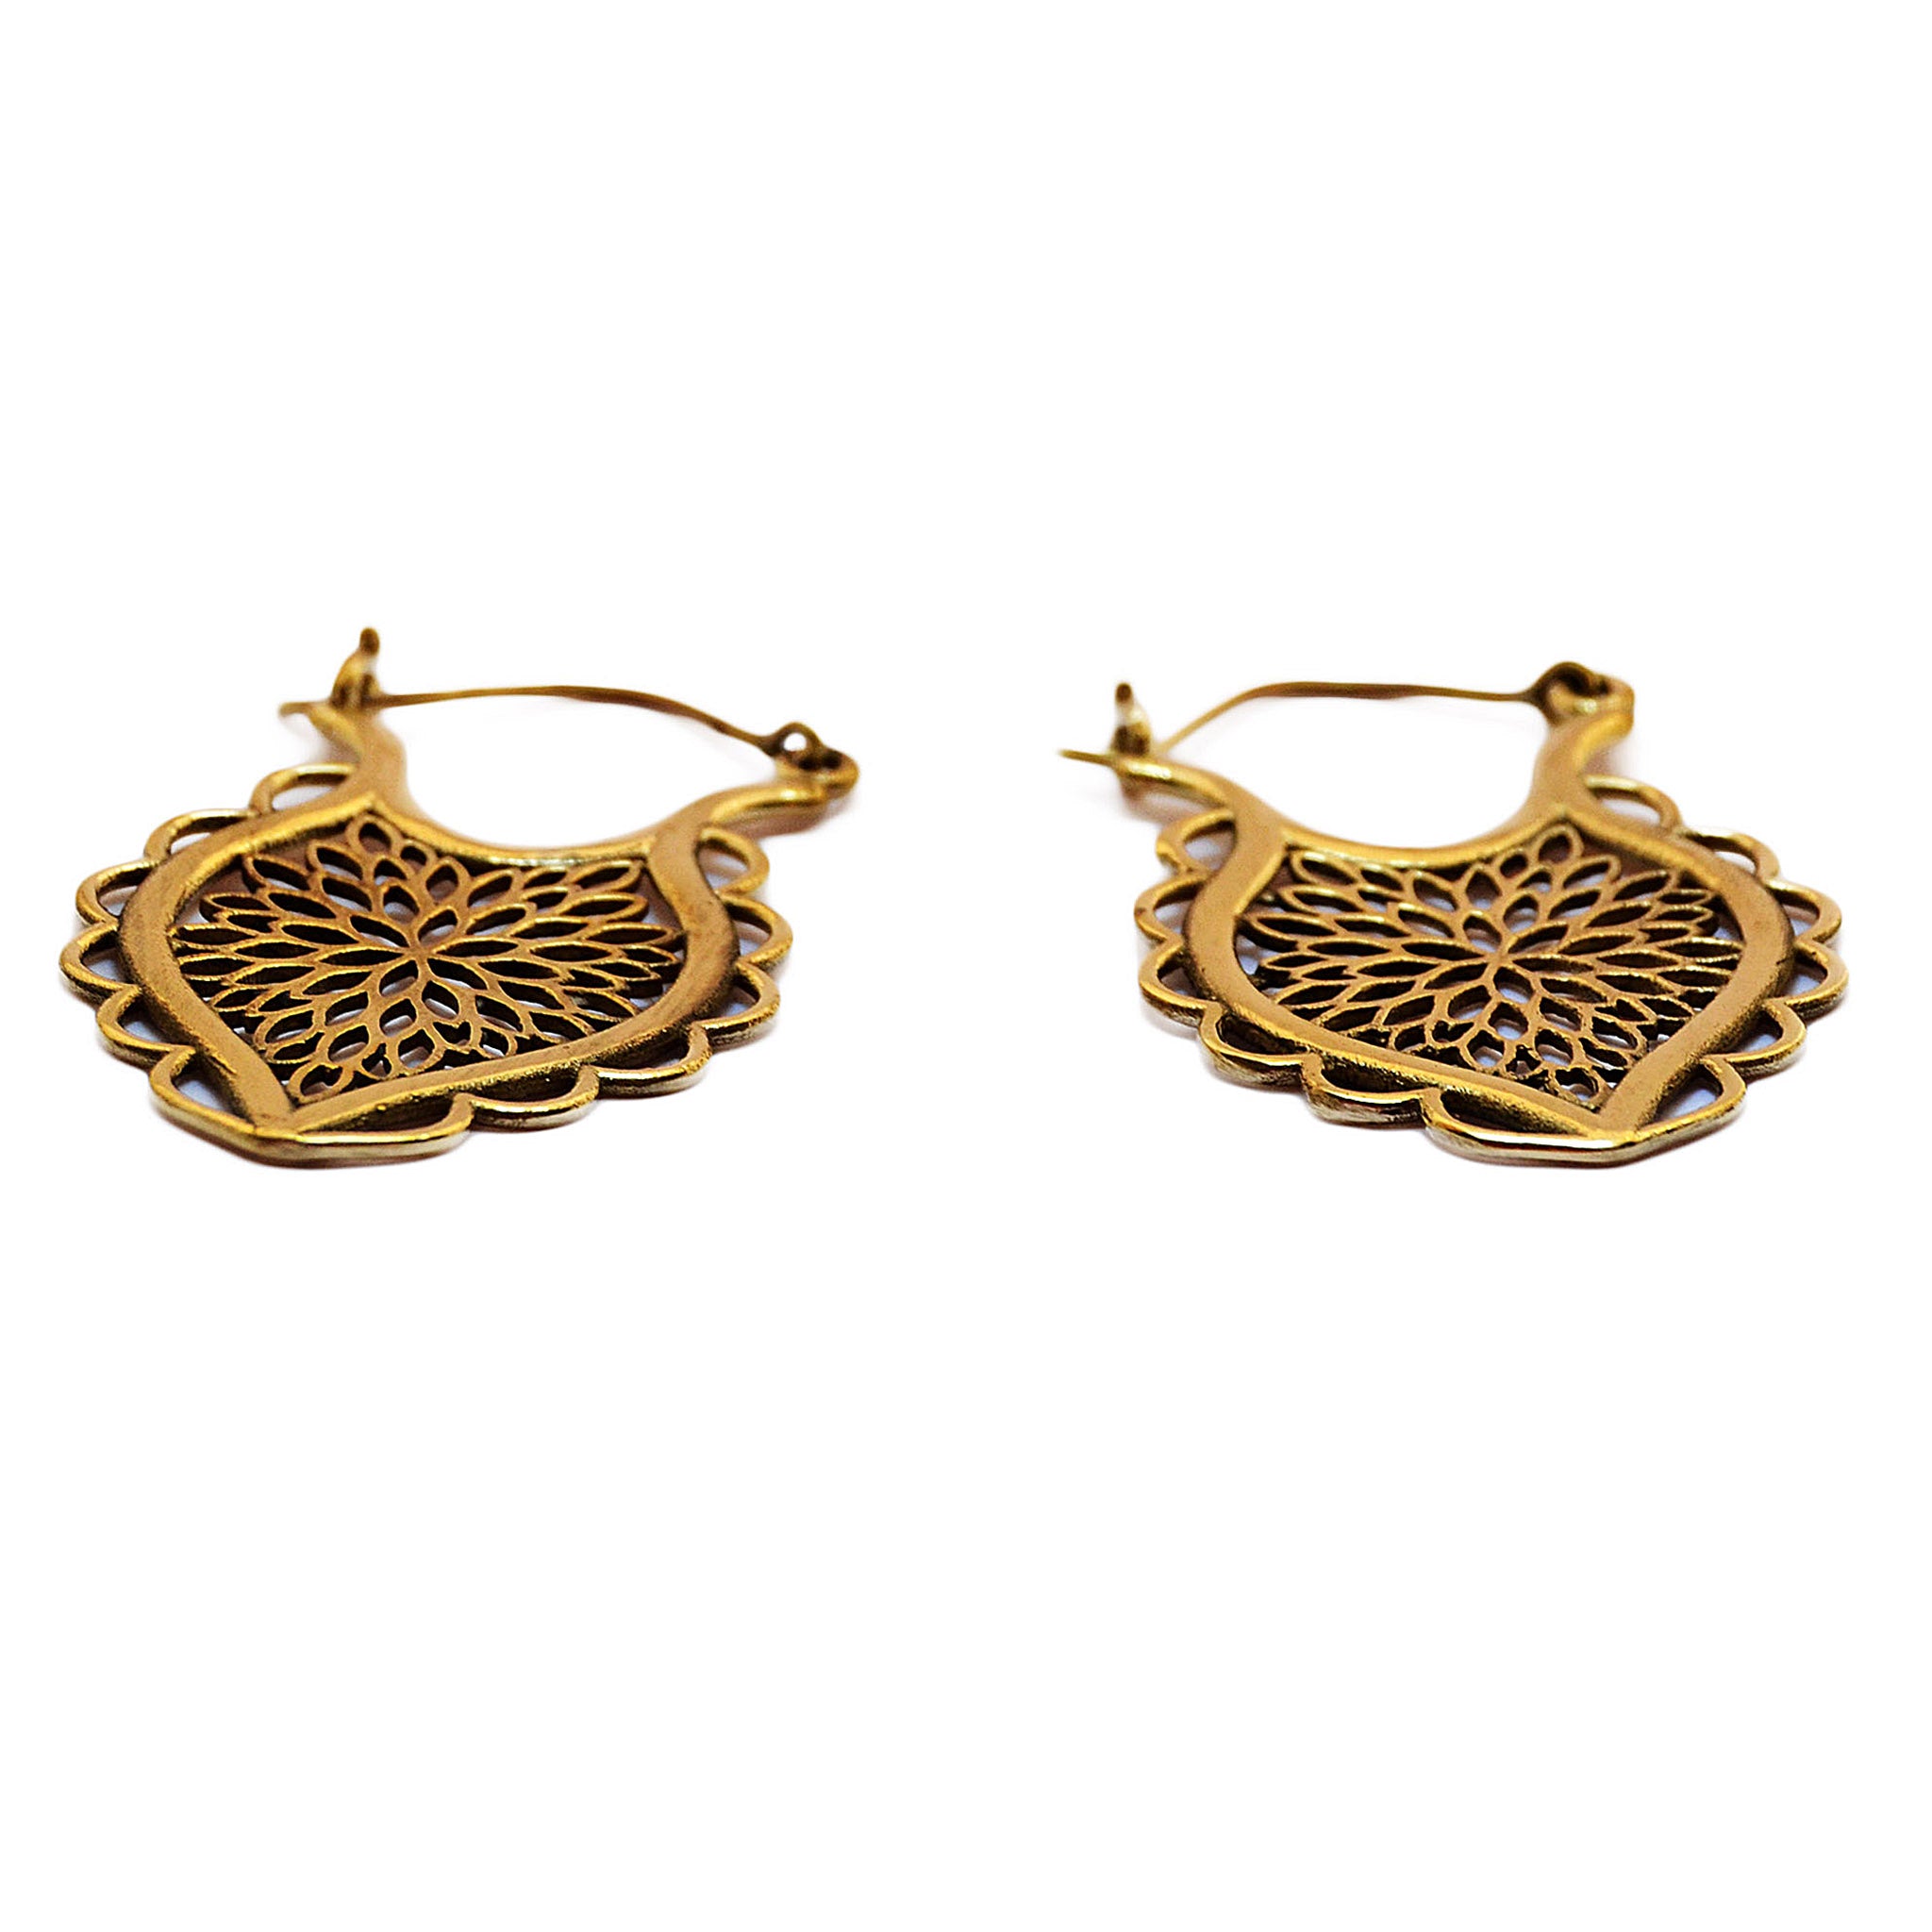 Gypsy indian earrings